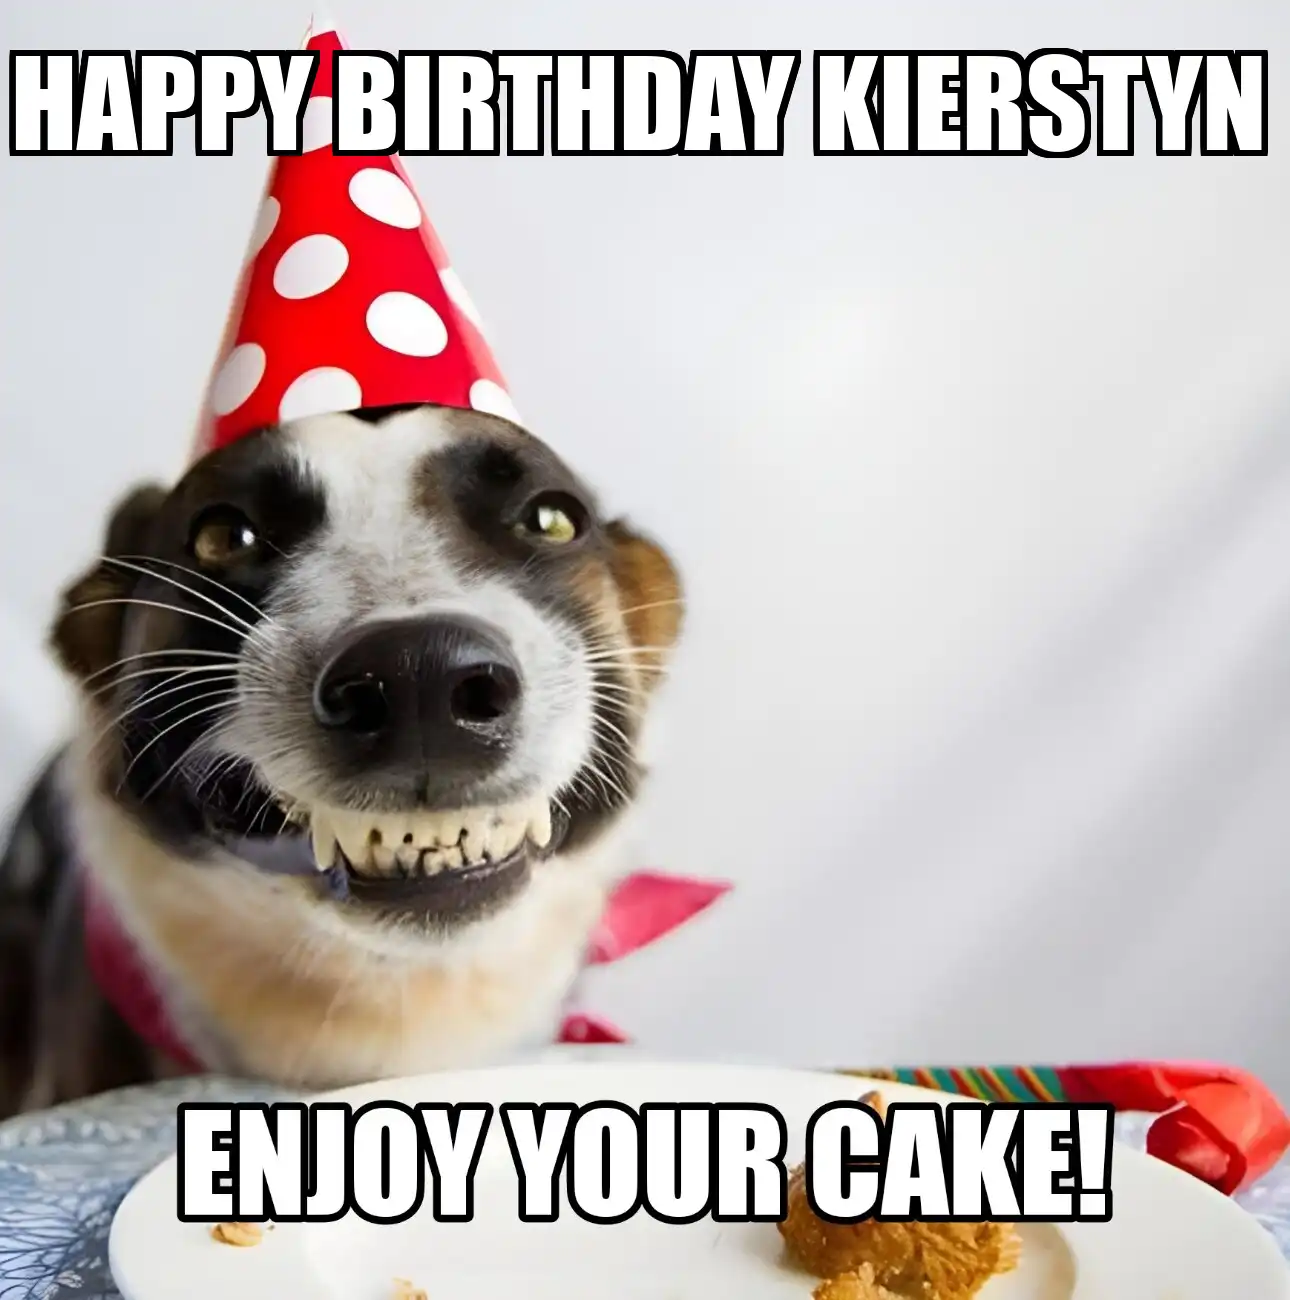 Happy Birthday Kierstyn Enjoy Your Cake Dog Meme